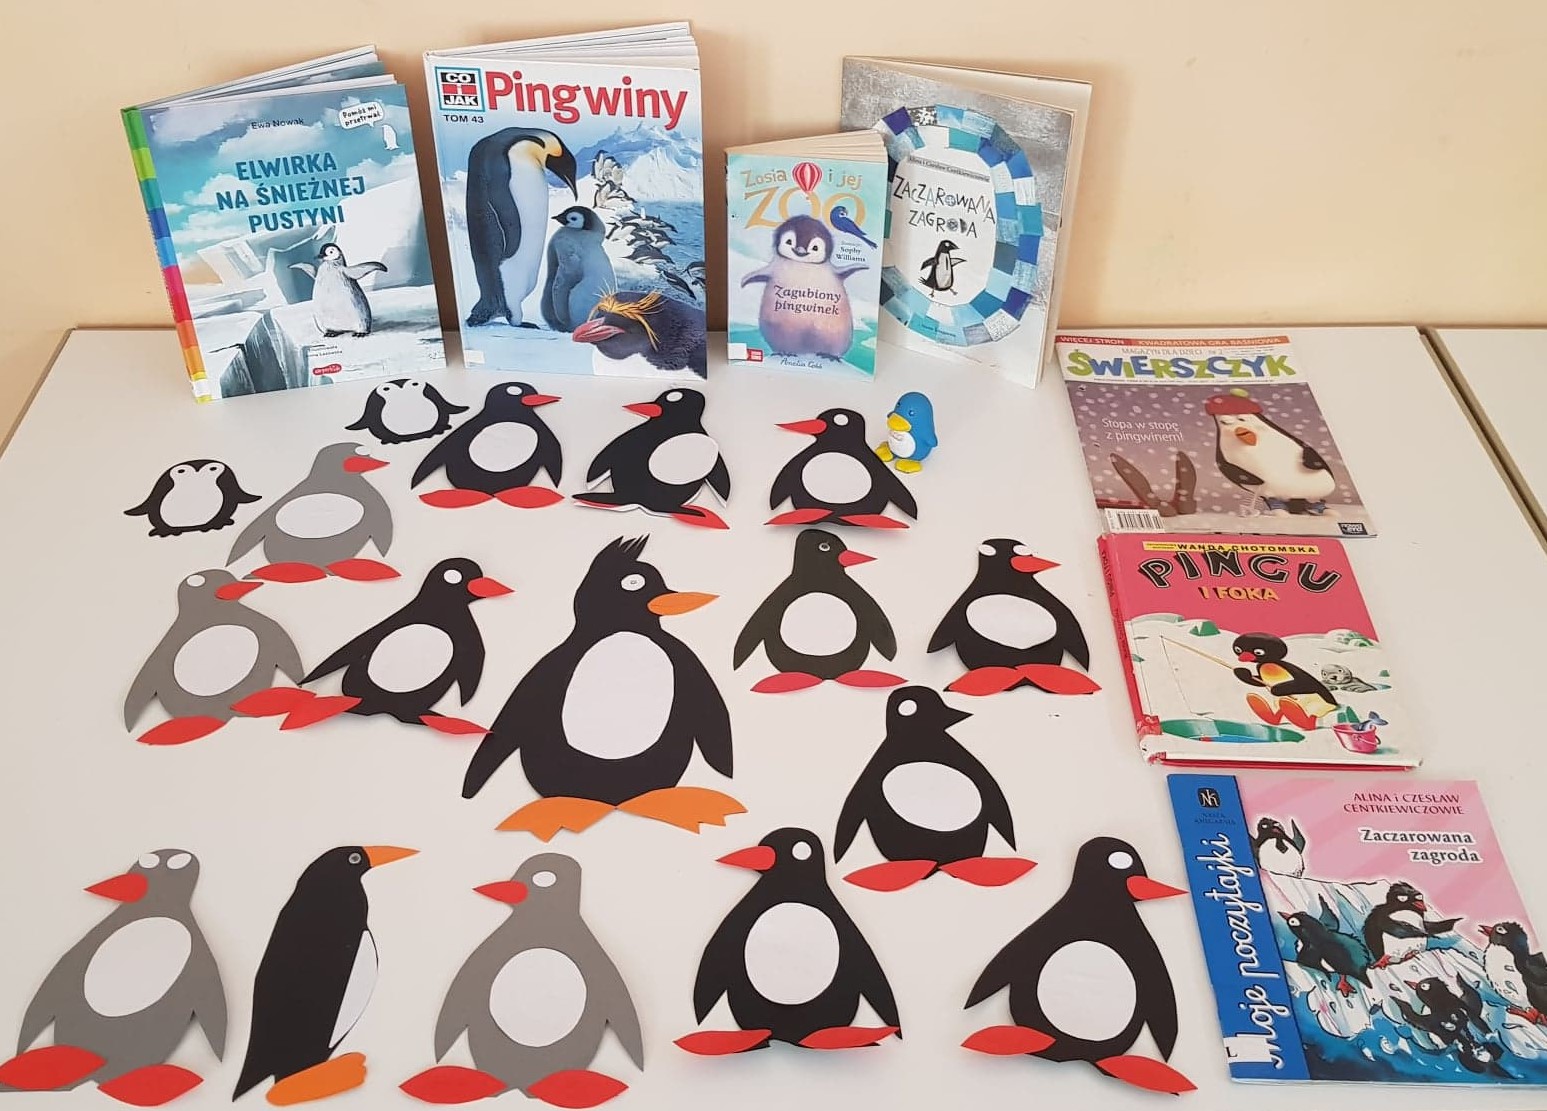 Na stole wyłożone są książki z ilustracją pingwinów na okładce orazPrace plastyczne przedstawiające pingwinki wykonane przez dzieci.